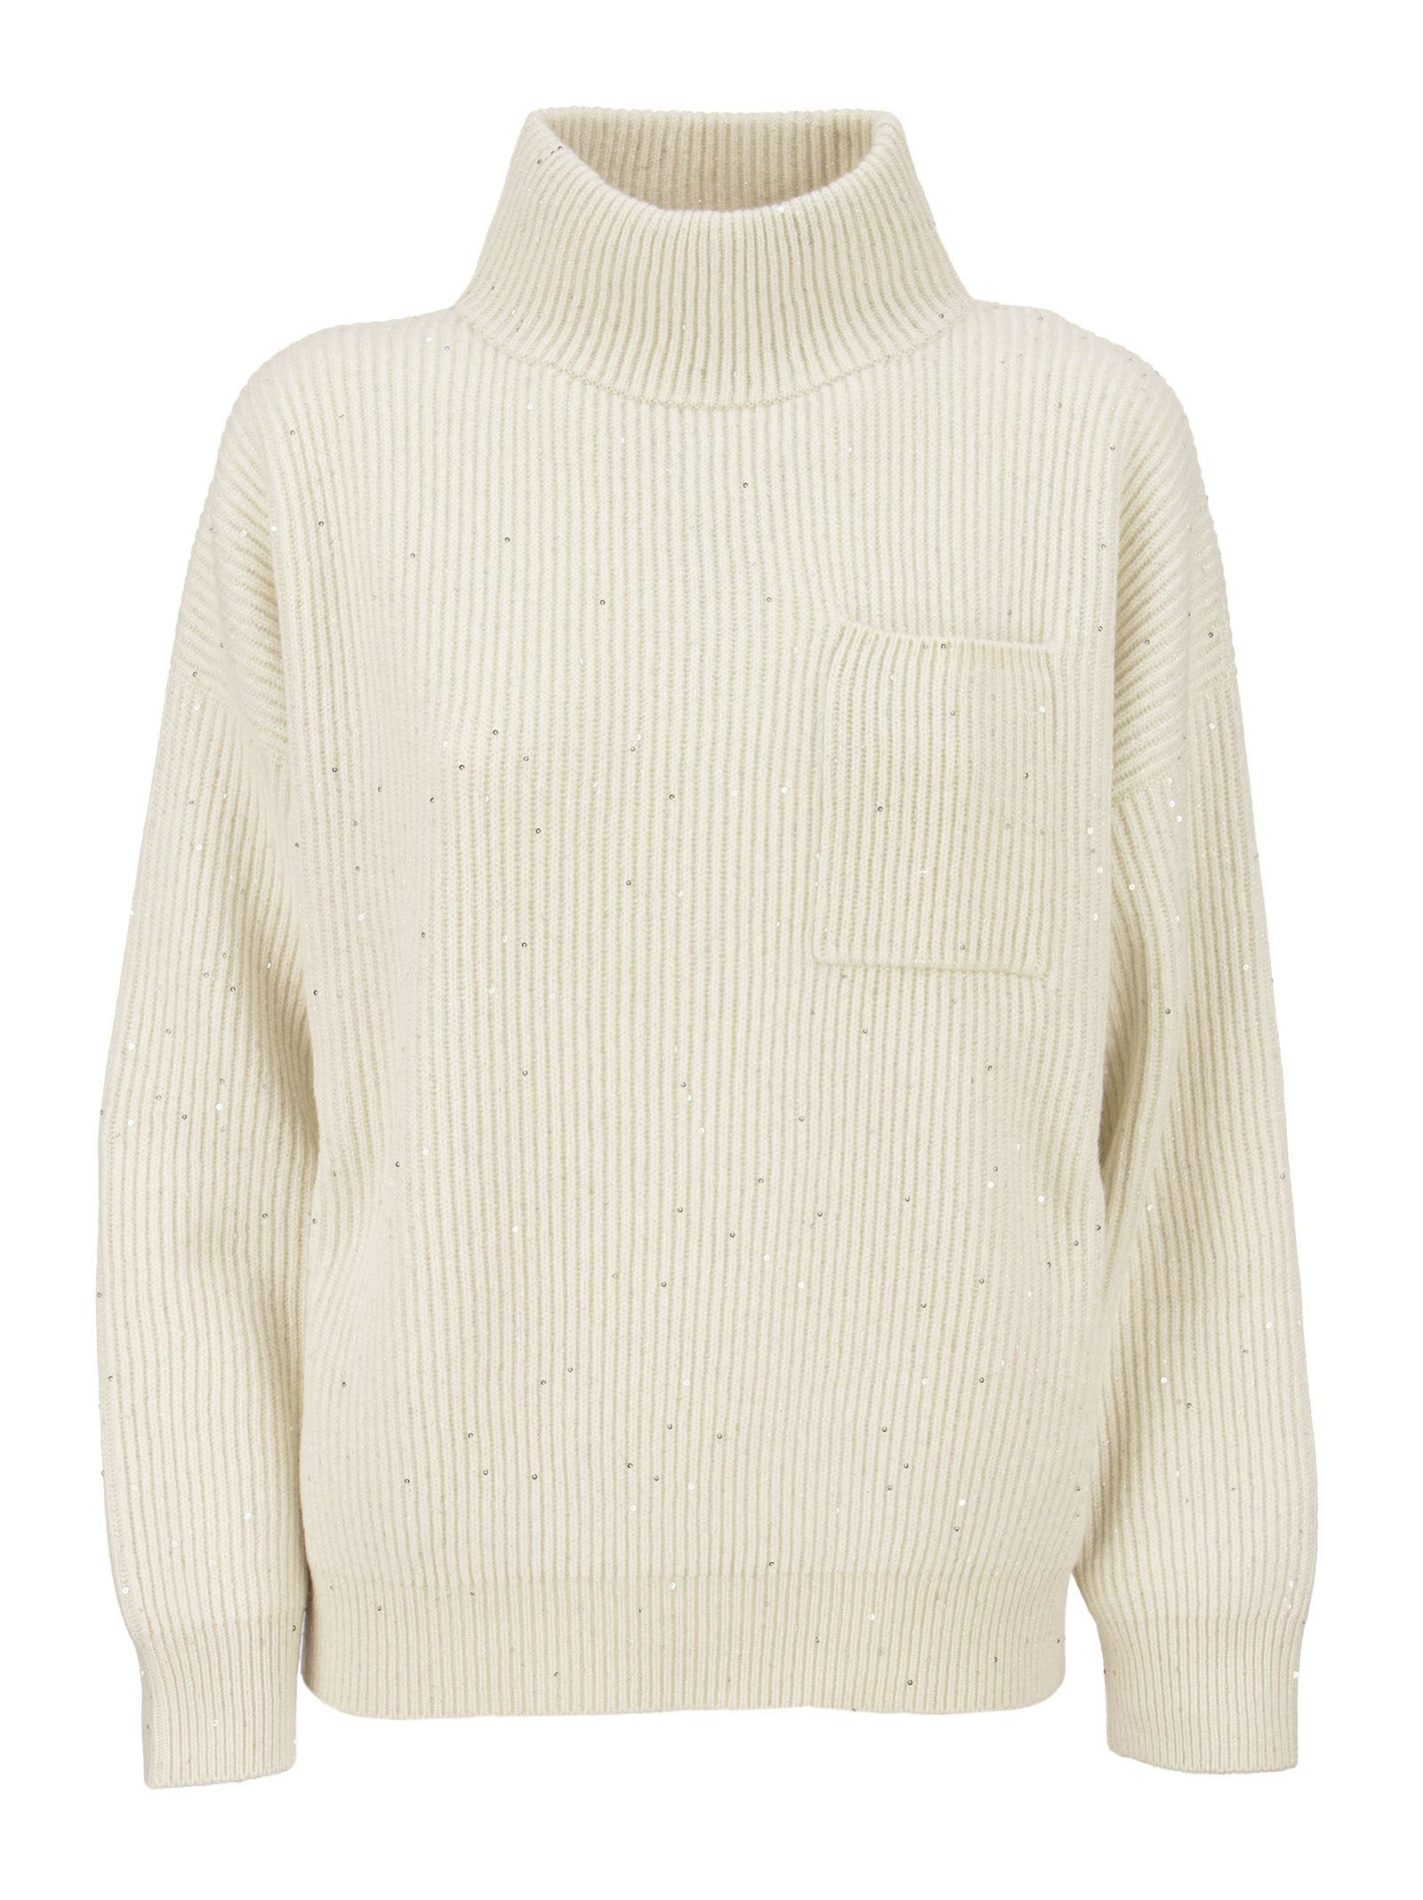 Maglia collo alto in cashmere e lana costa inglese - Bellettini.com